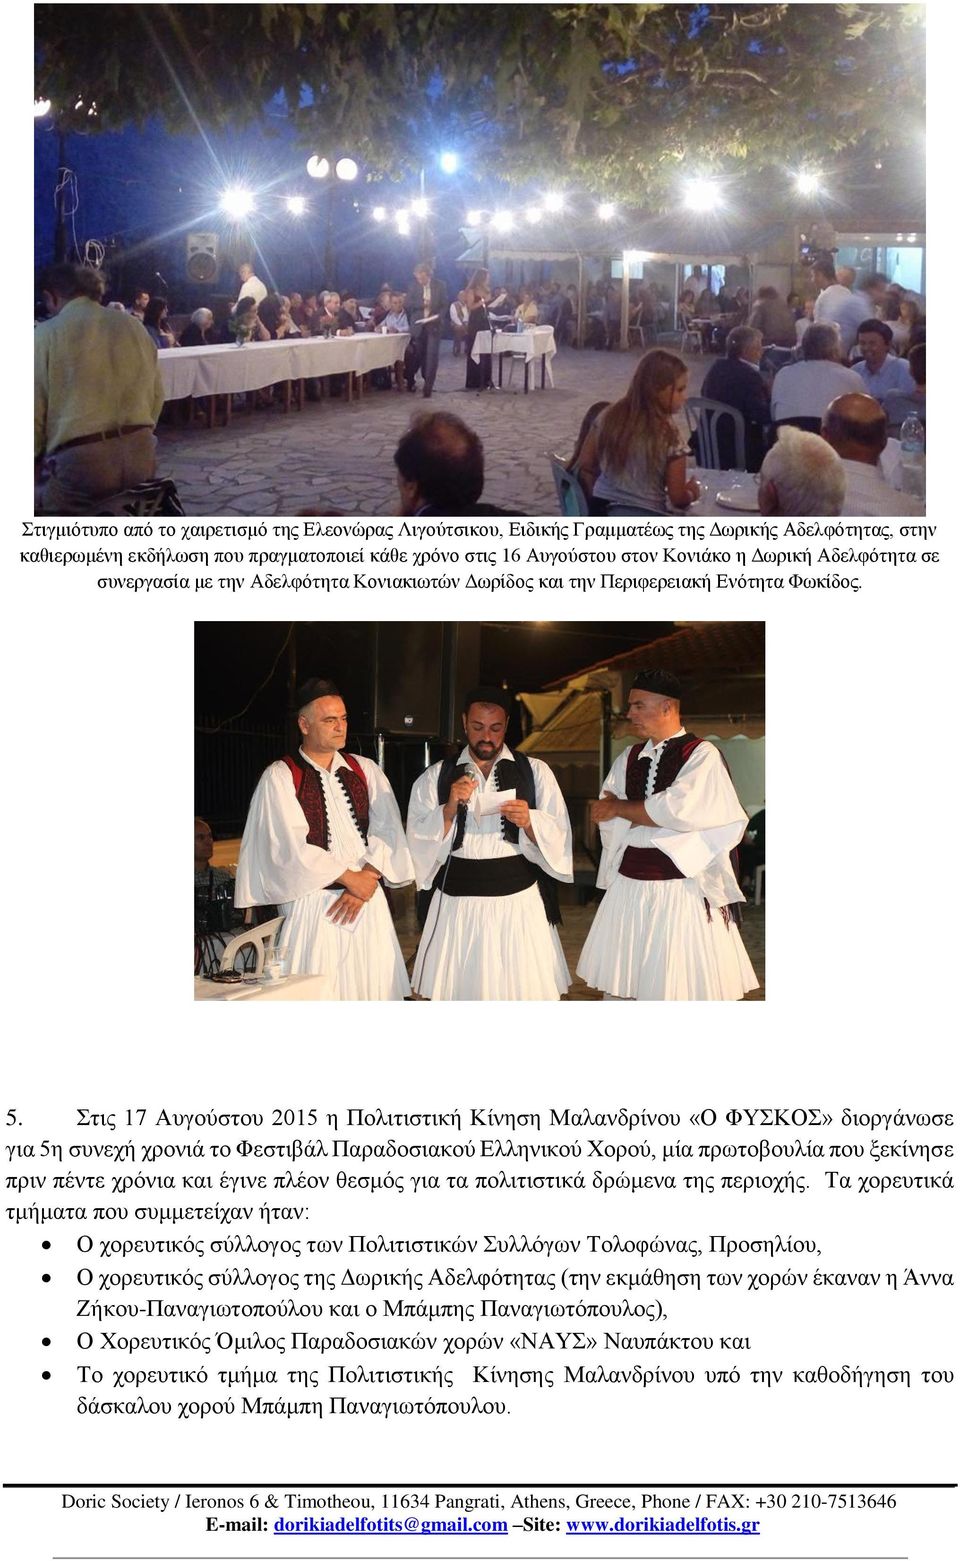 Στις 17 Αυγούστου 2015 η Πολιτιστική Κίνηση Μαλανδρίνου «Ο ΦΥΣΚΟΣ» διοργάνωσε για 5η συνεχή χρονιά το Φεστιβάλ Παραδοσιακού Ελληνικού Χορού, μία πρωτοβουλία που ξεκίνησε πριν πέντε χρόνια και έγινε